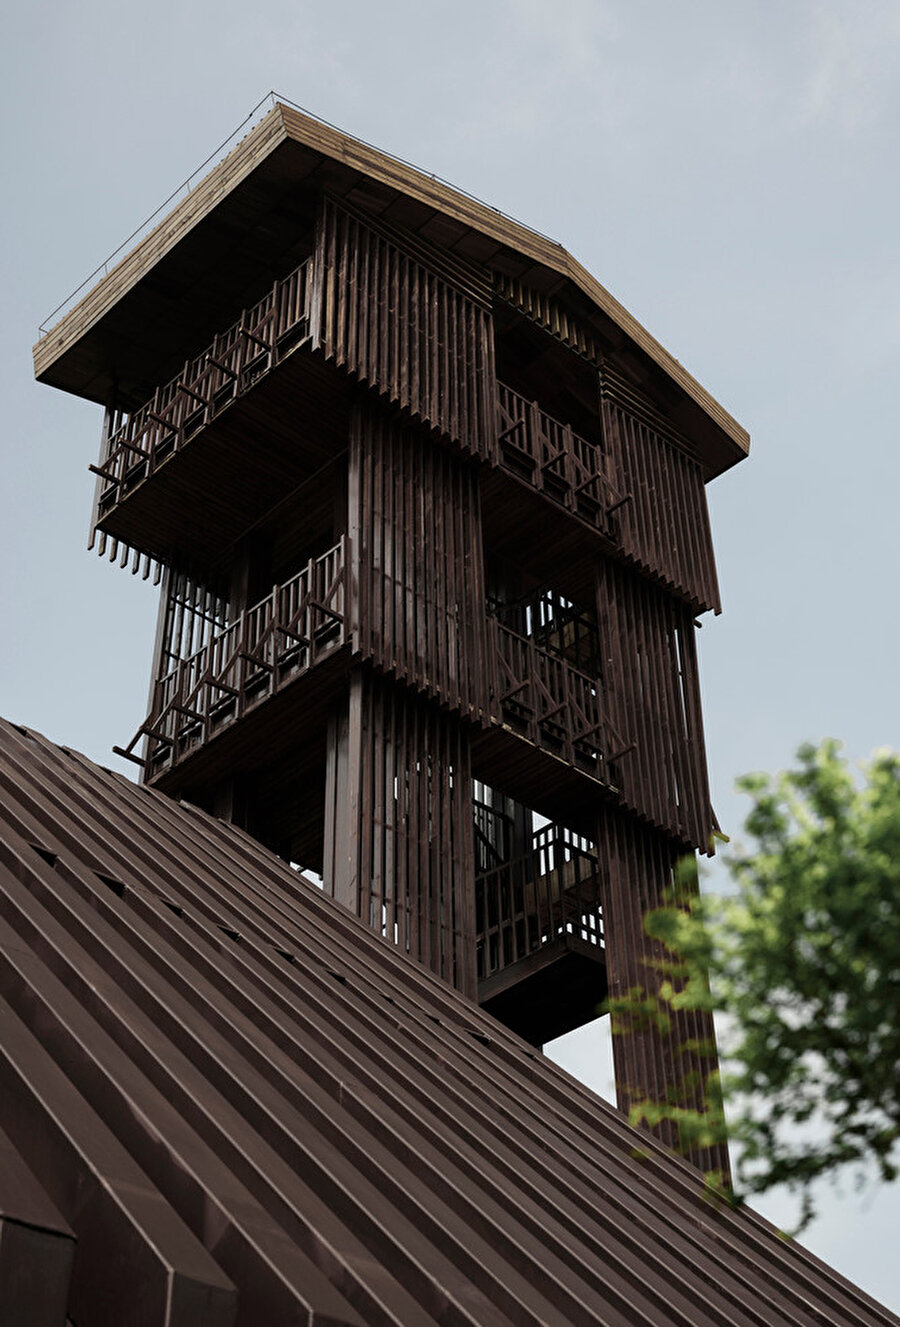 Ahşap ızgaralar ile gözetleme kulesi rüzgardan korunuyor.